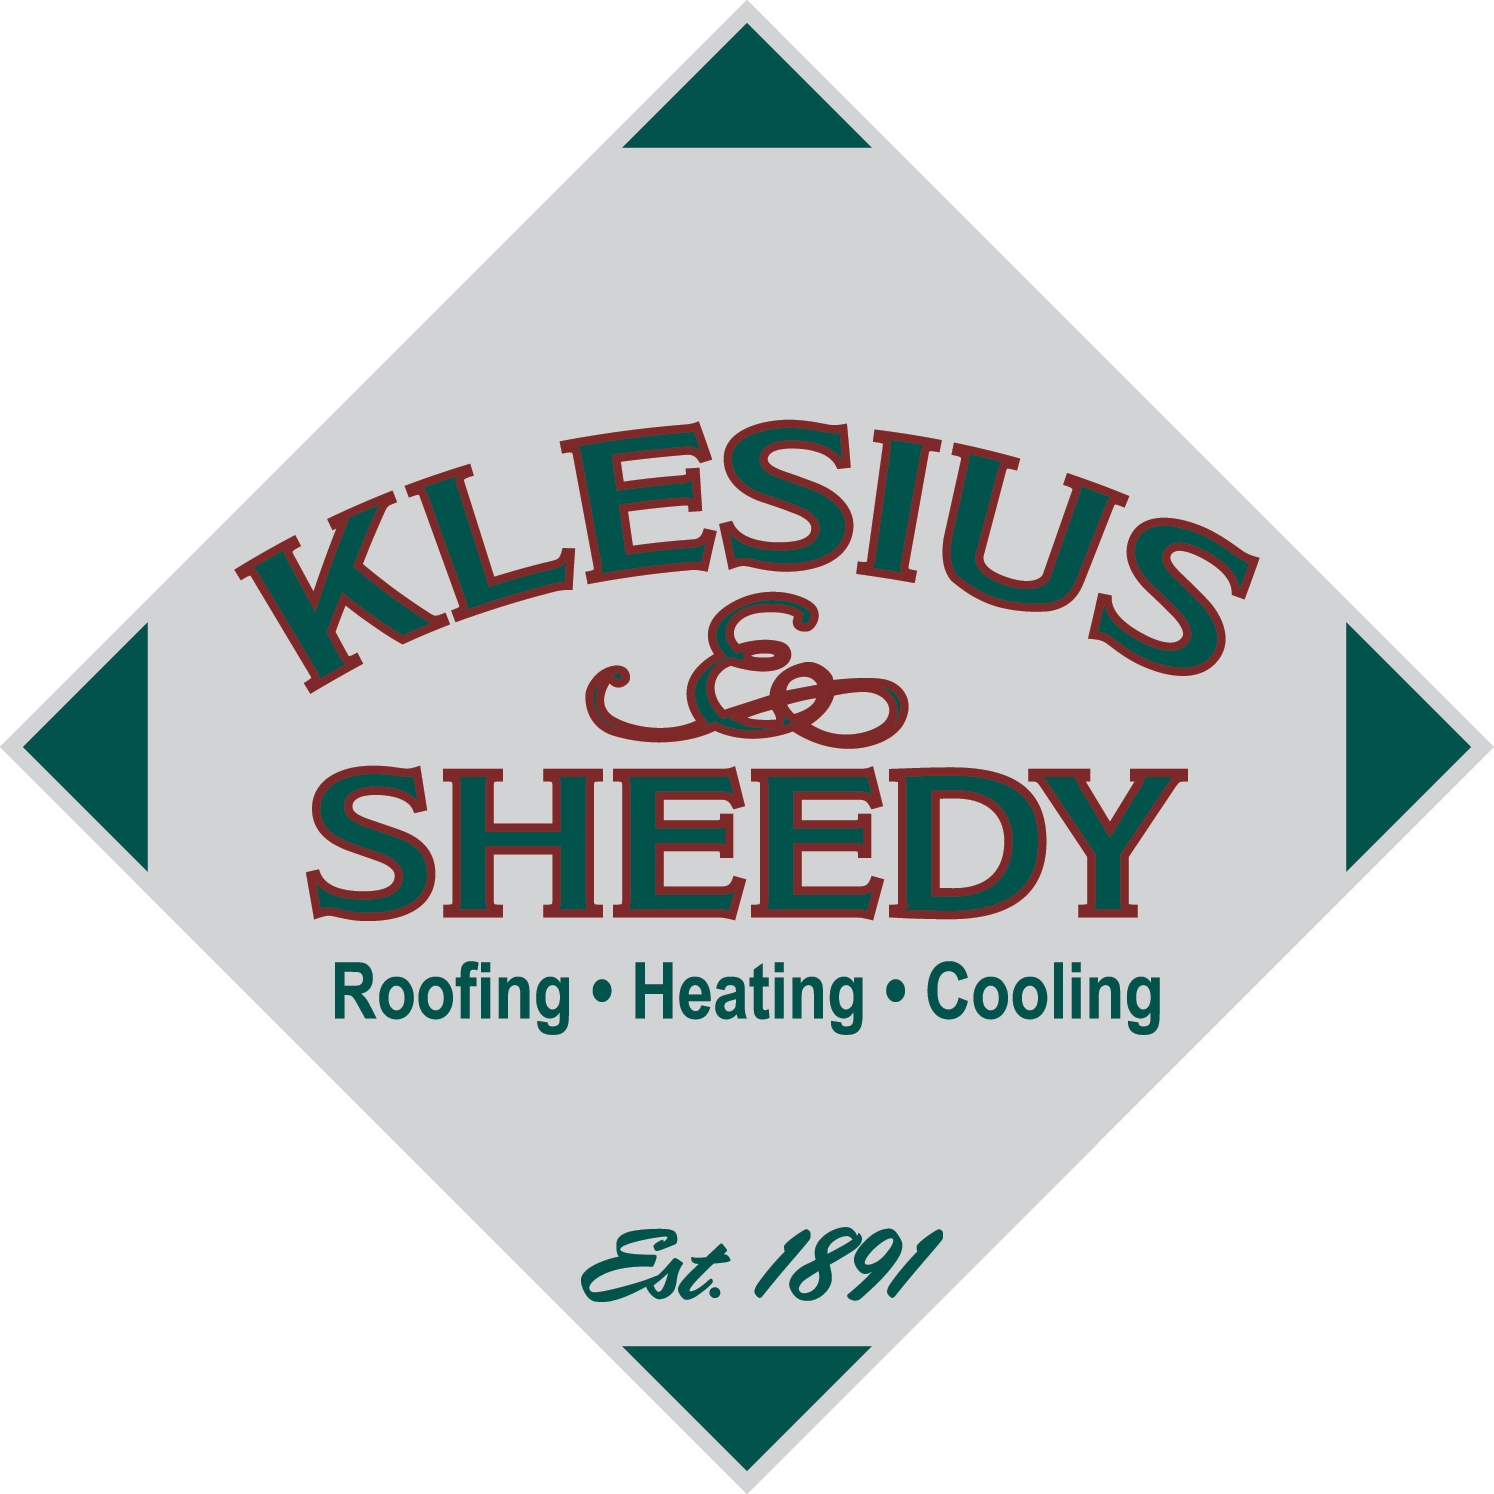 Klesius & Sheedy Logo